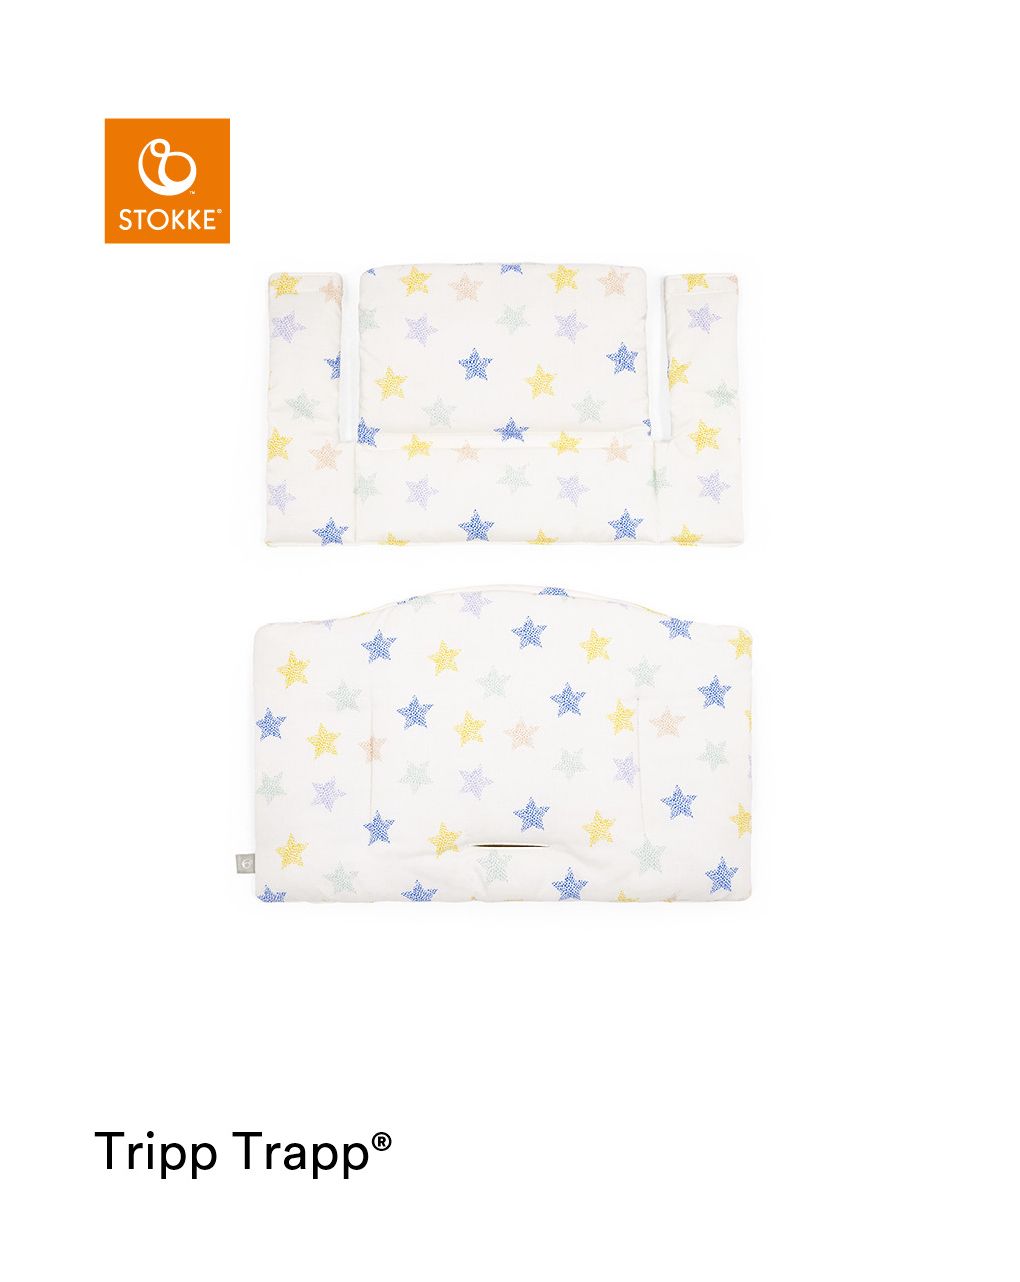 Tripp trapp® classic cushion stars multi ocs
cuscino per seggiolone, morbido e avvolgente per il tuo bambino